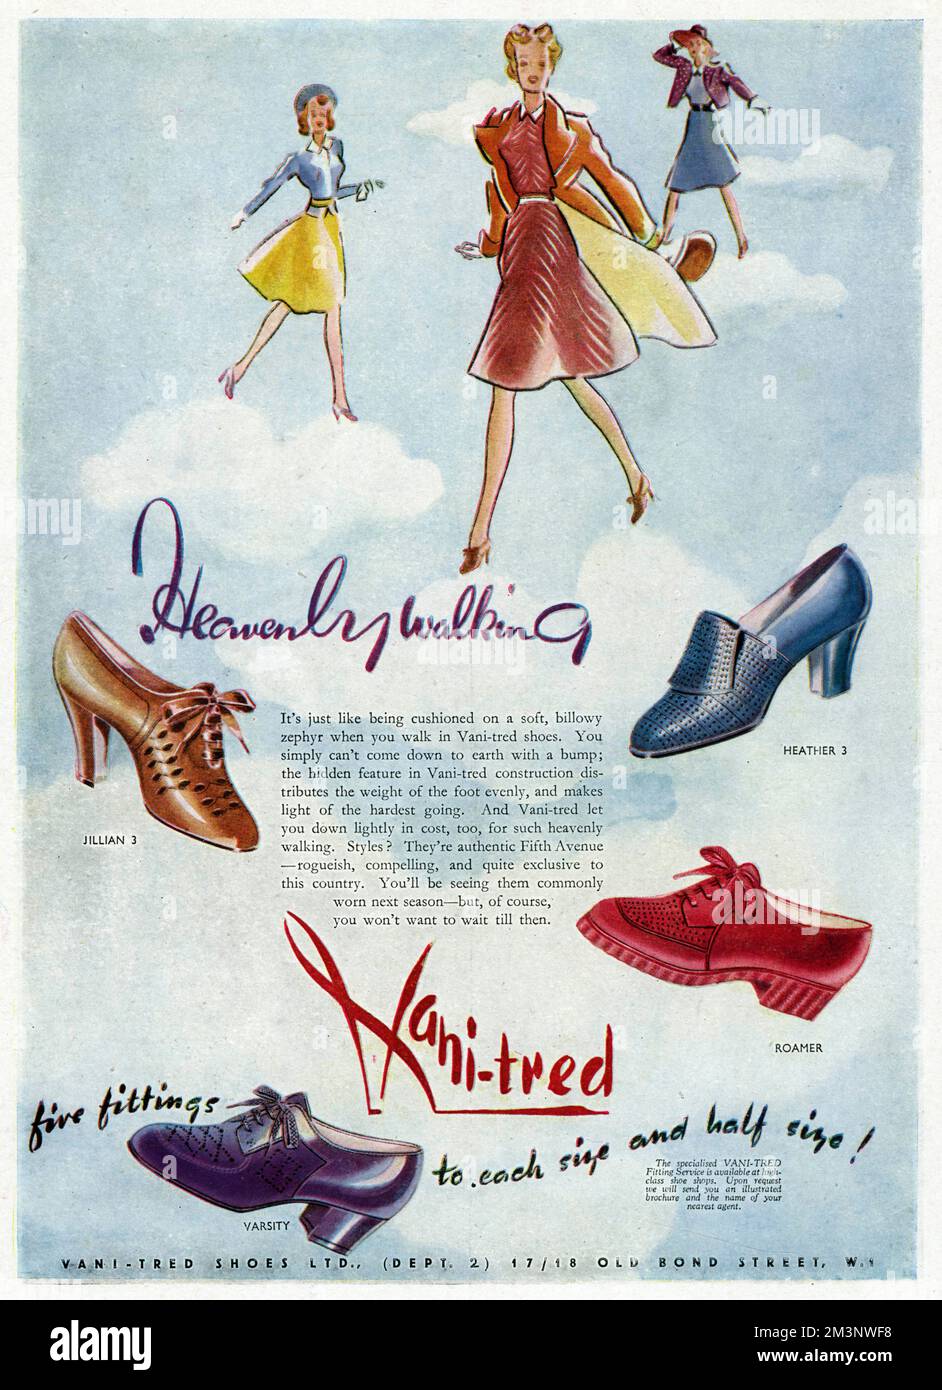 La marche céleste ». Publicité pour les chaussures Vani-tred, doux, billowy  zephyr quand vous marchez, vous ne pouvez tout simplement pas descendre à  la terre avec une bosse; la caractéristique cachée